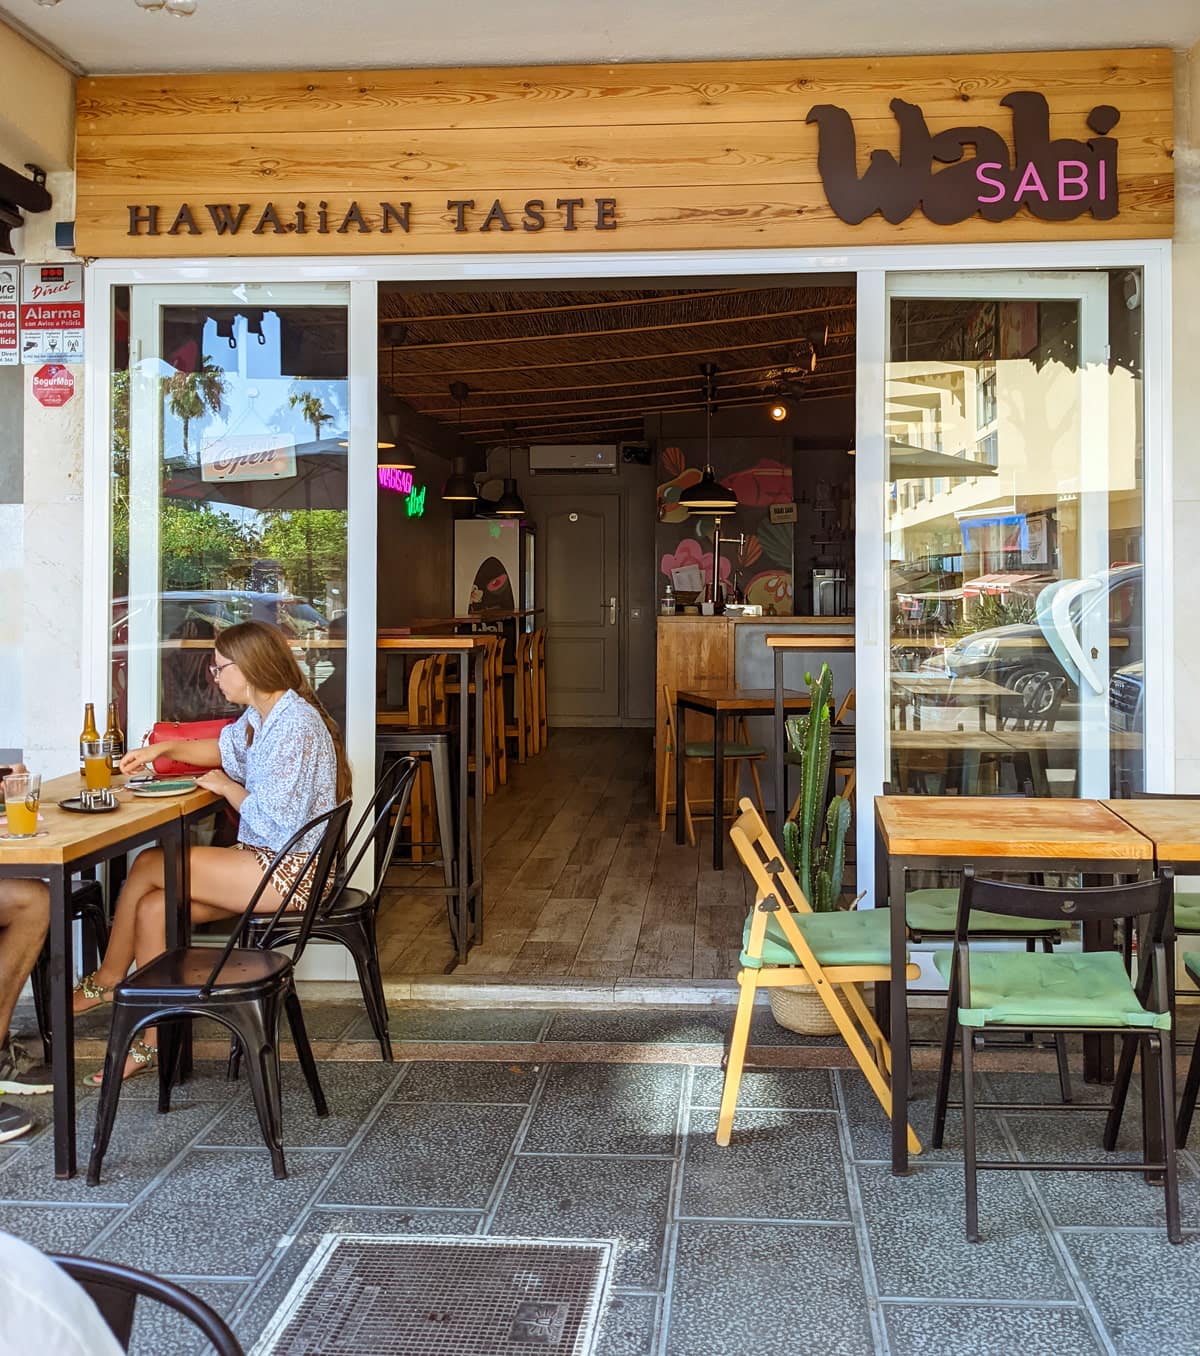 Restaurant with Hawaiian cuisine